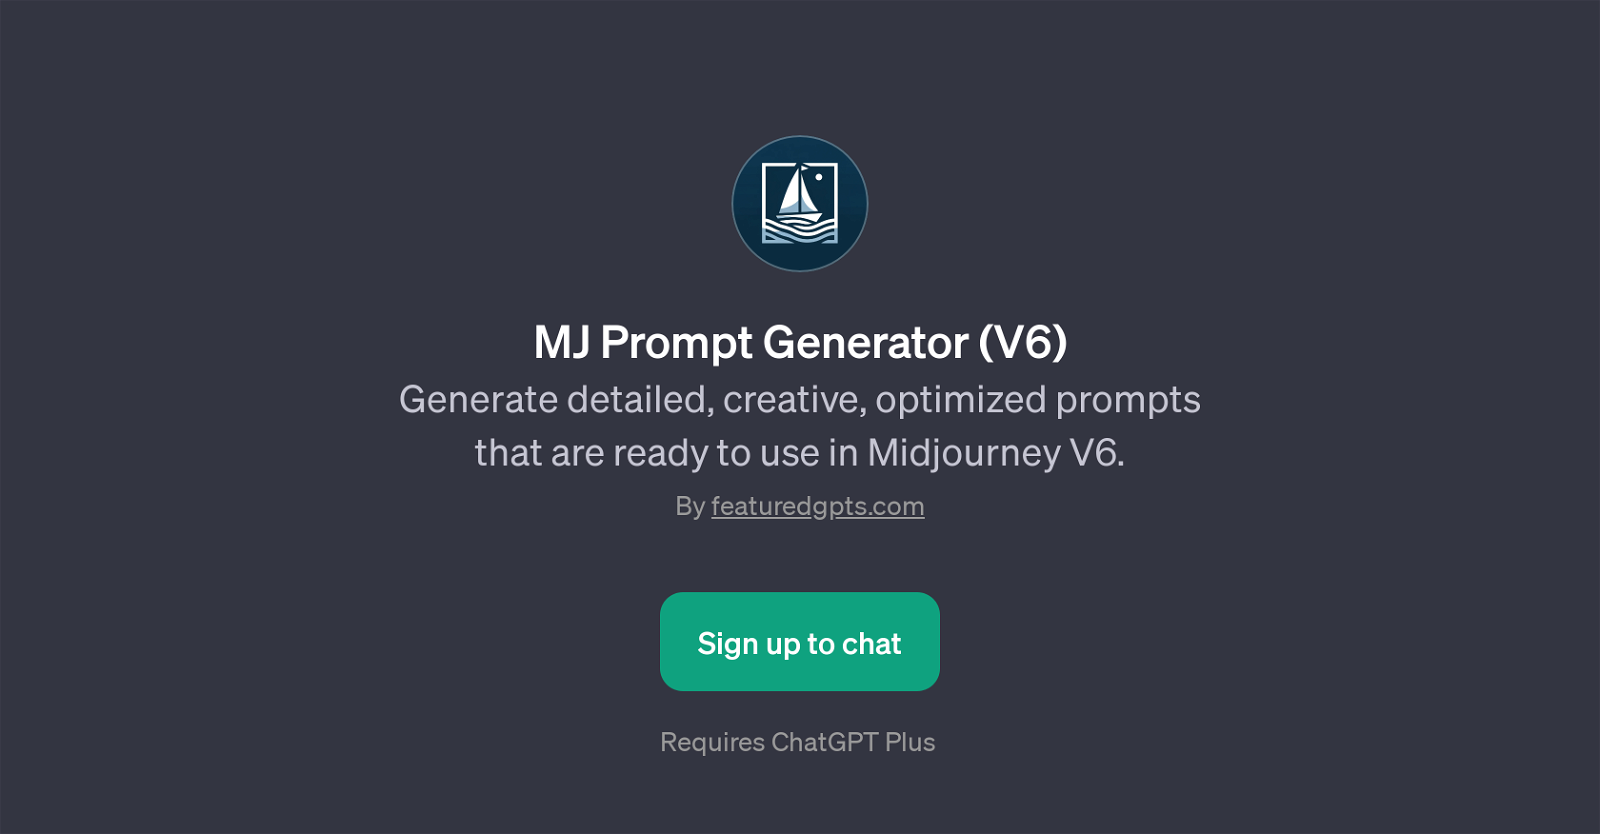 MJ Prompt Generator (V6) website